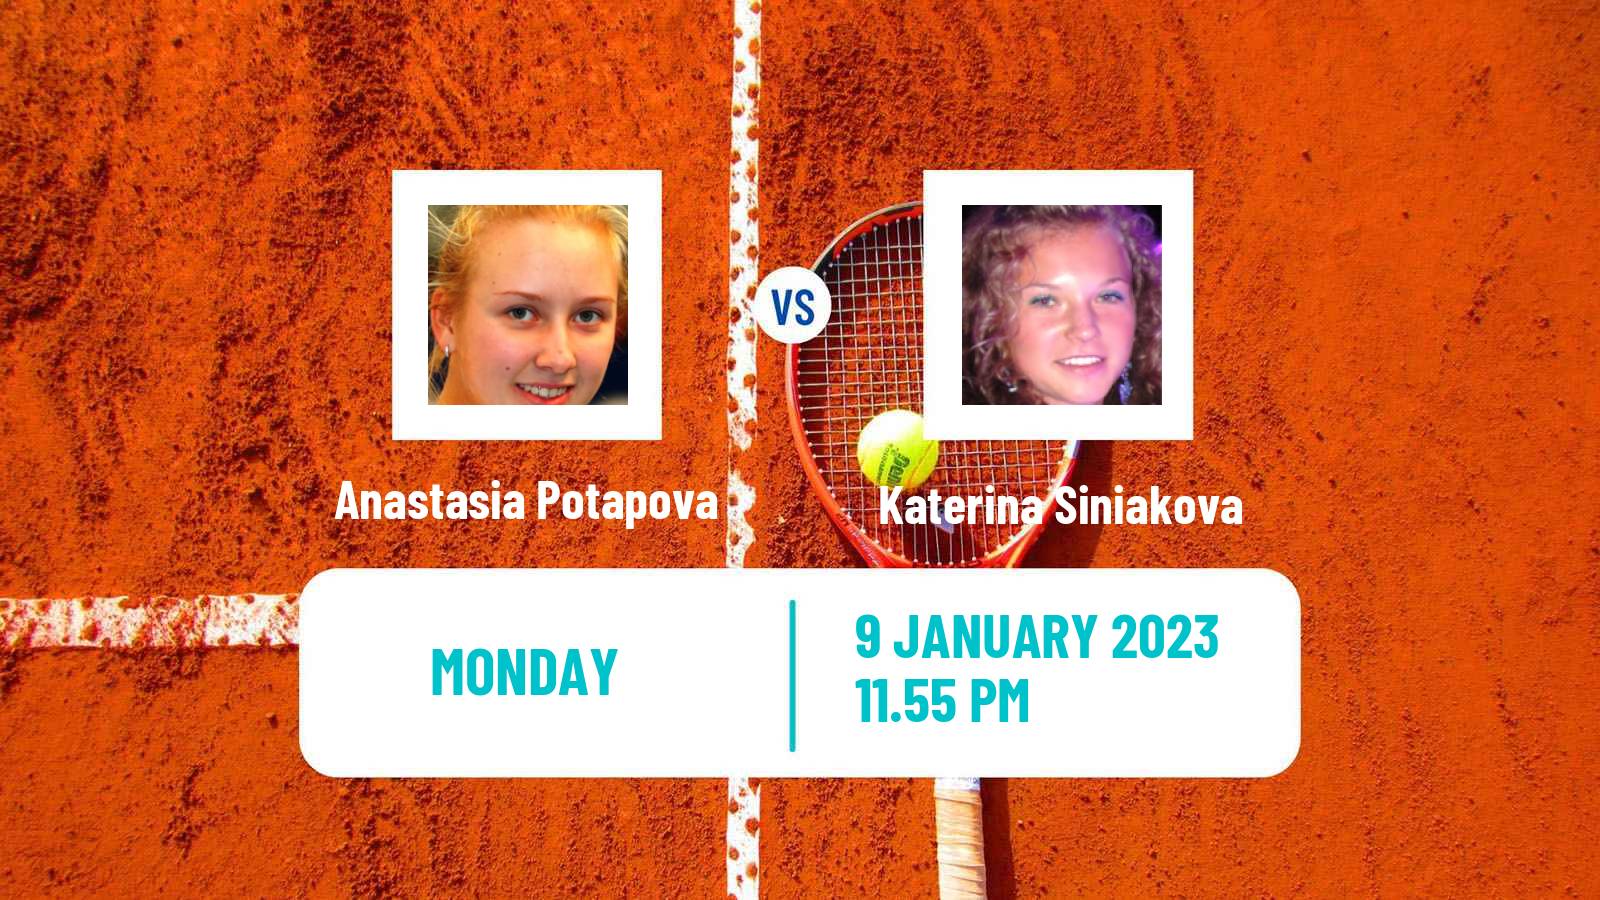 Tennis WTA Adelaide 2 Anastasia Potapova - Katerina Siniakova